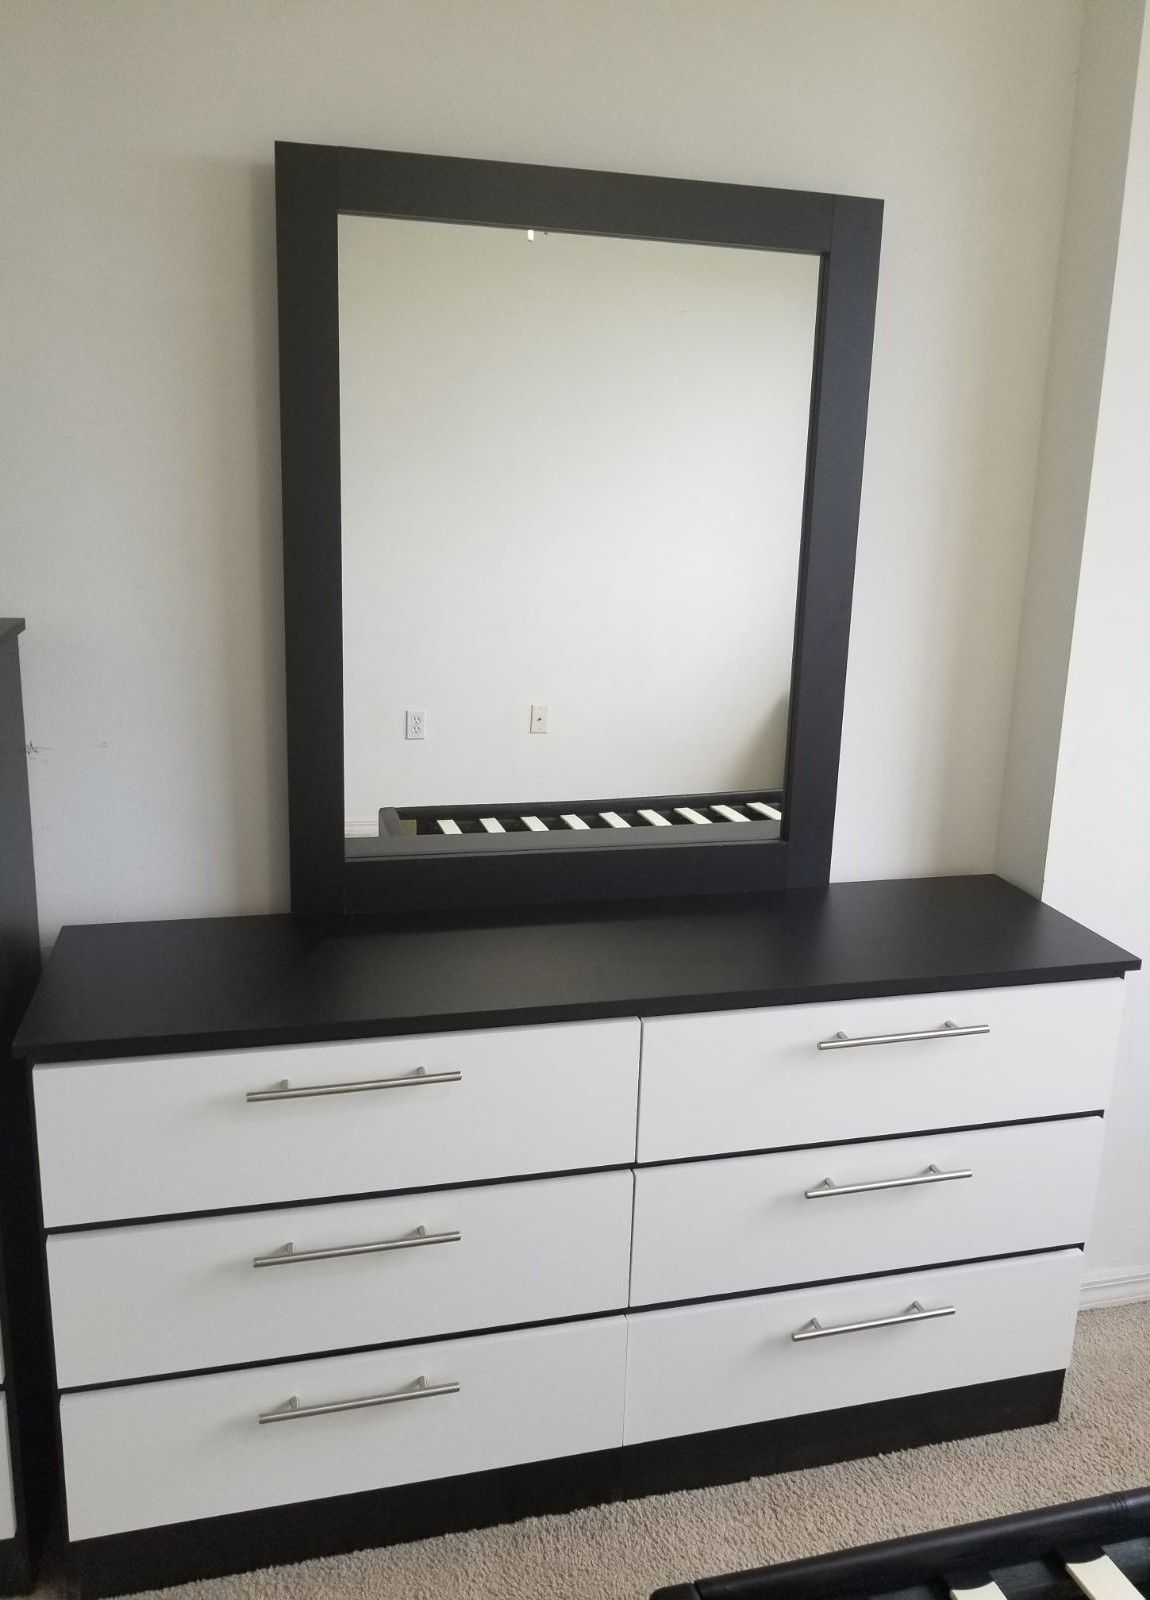 Comoda con espejo.. Dresser with mirror